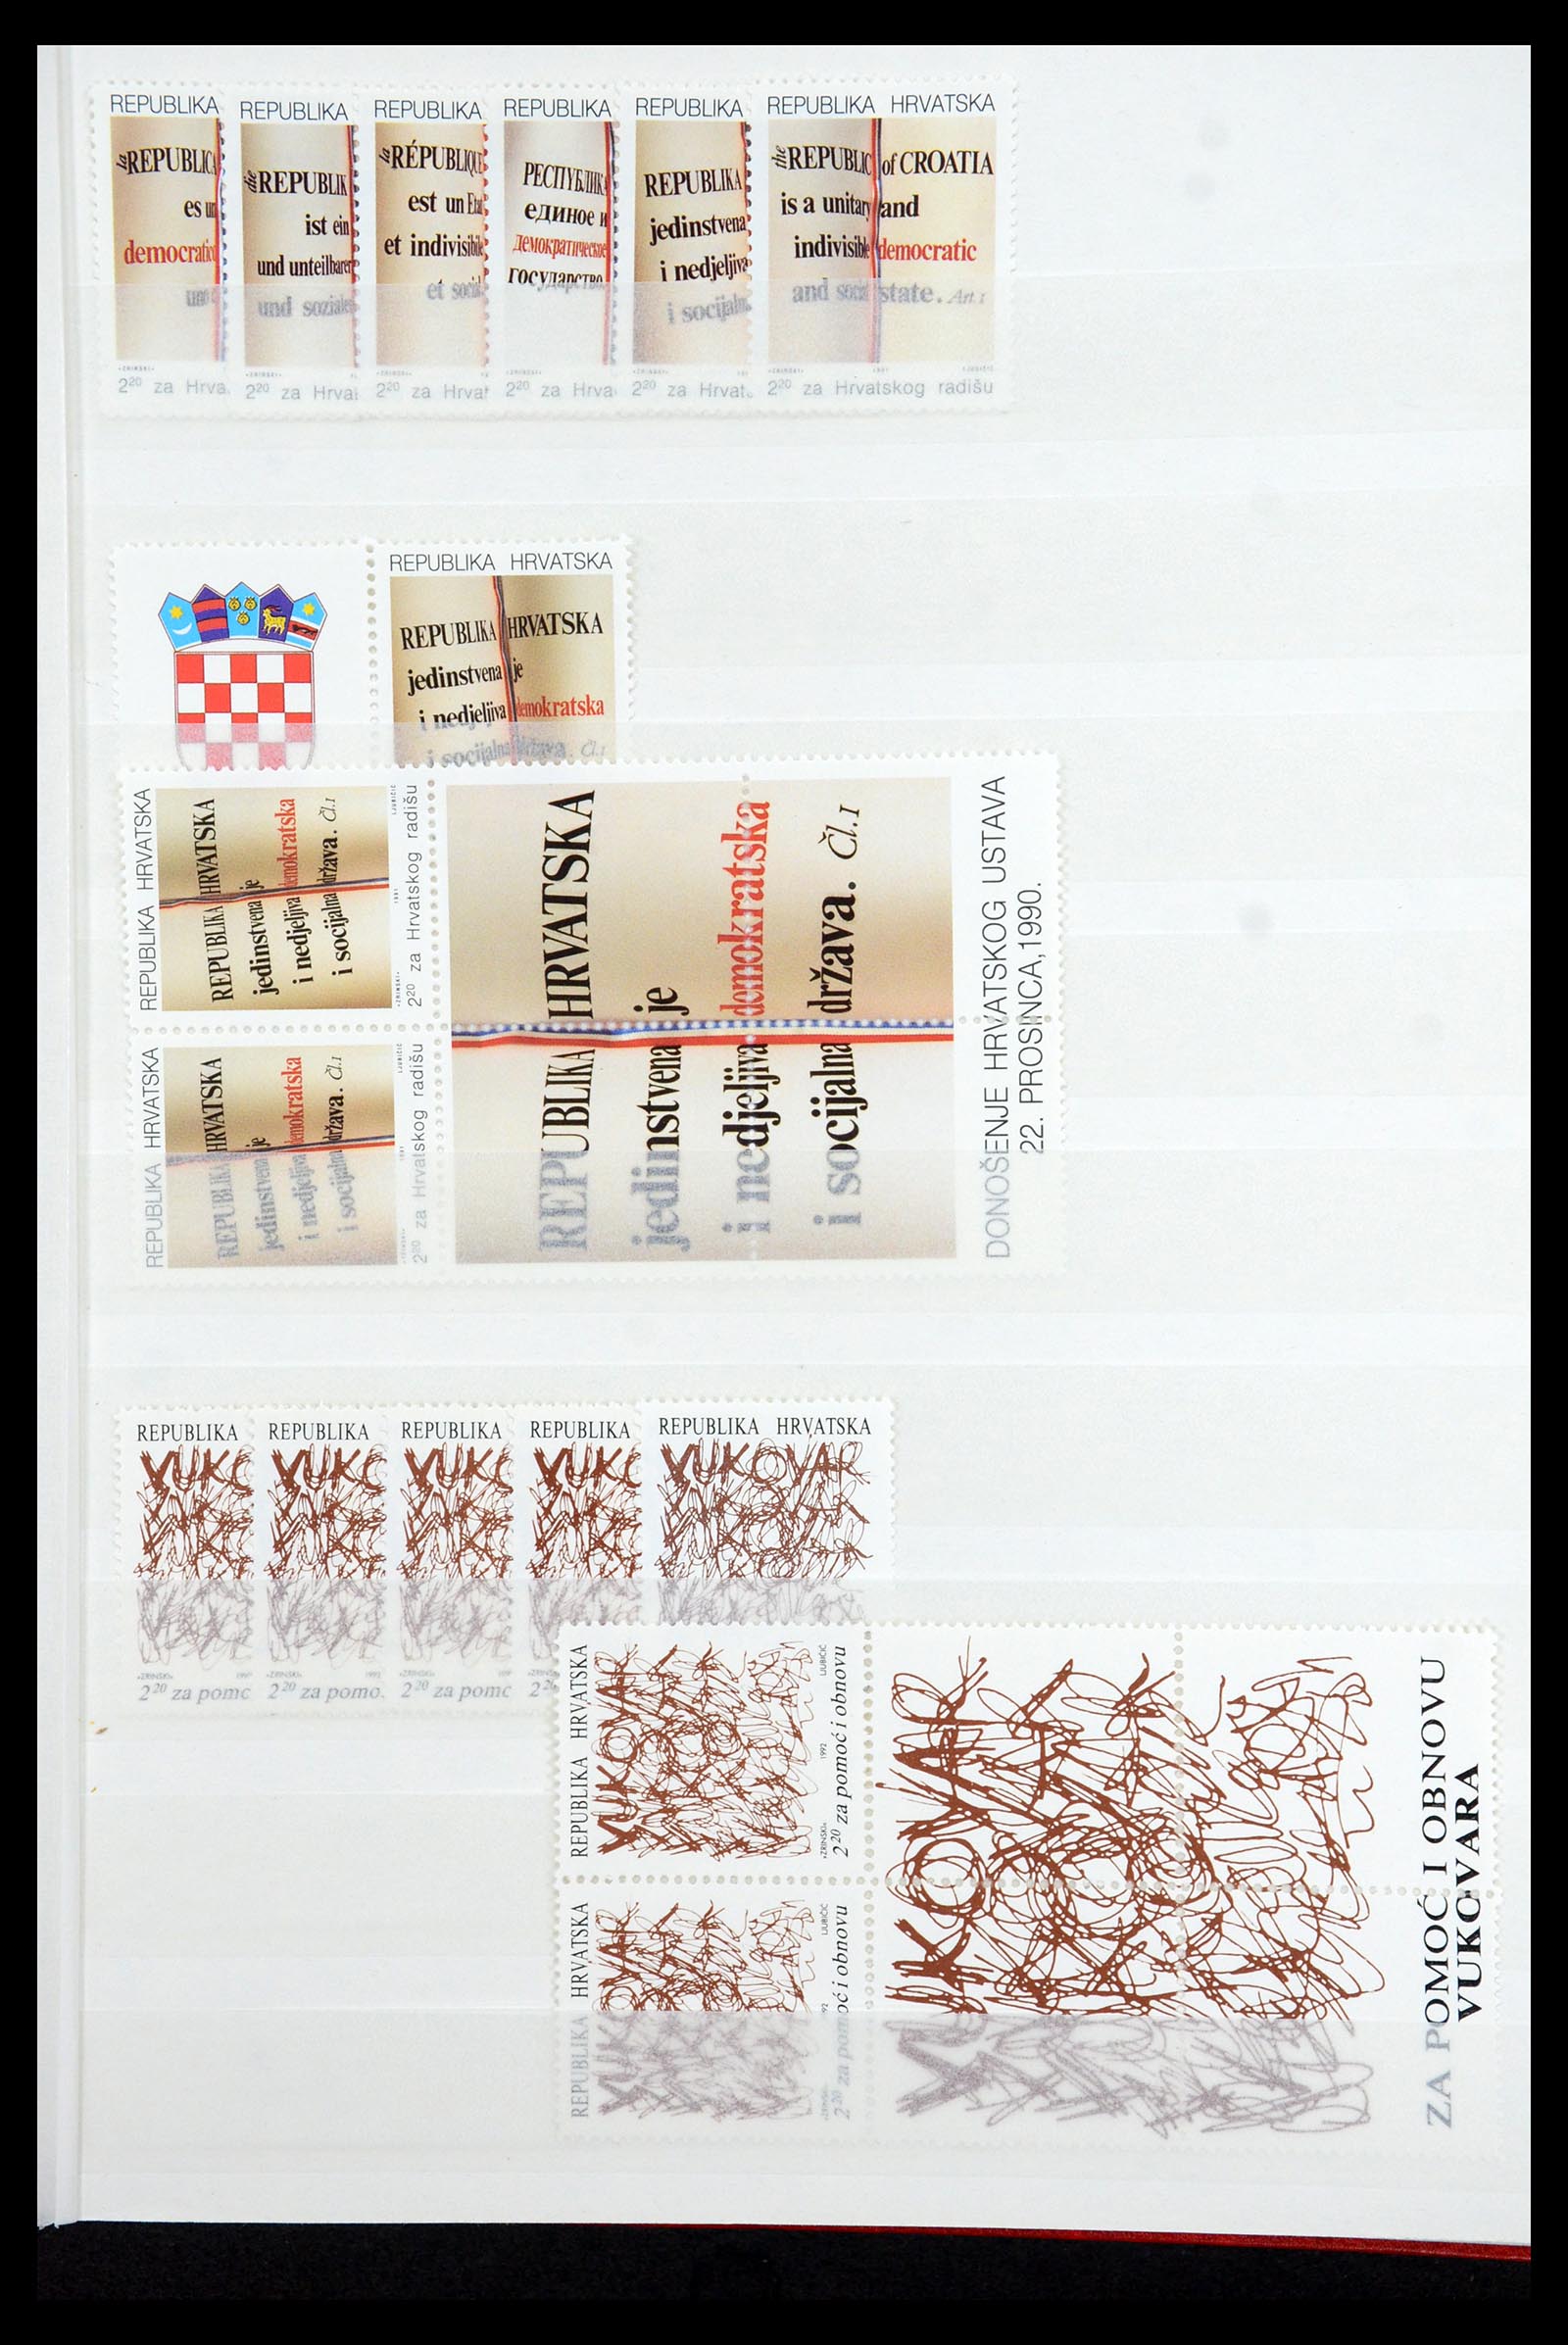 36461 053 - Stamp collection 36461 Slovenia, Croatia and Bosnia-Herzegovina MNH 1991